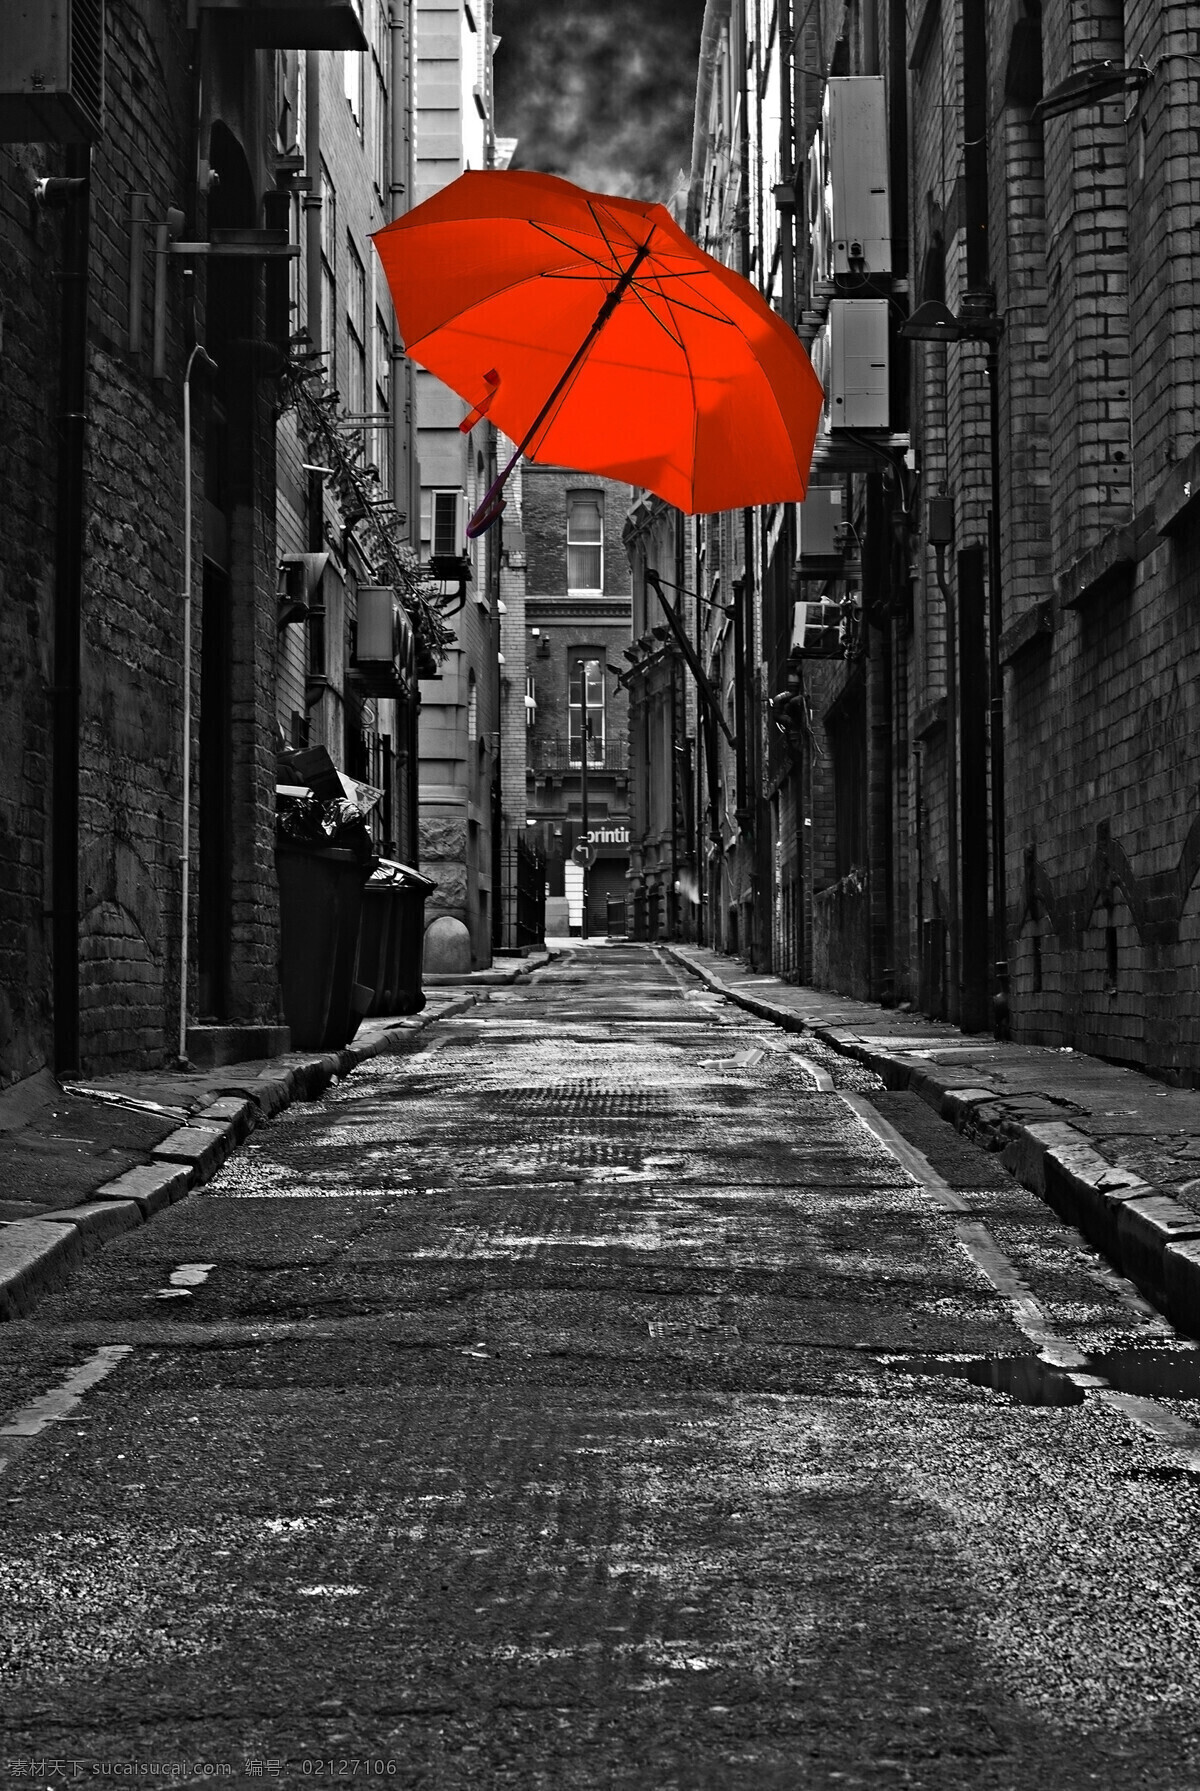 古老 街道 上 红 雨伞 复古 创意 醒目 红雨伞 自然景观